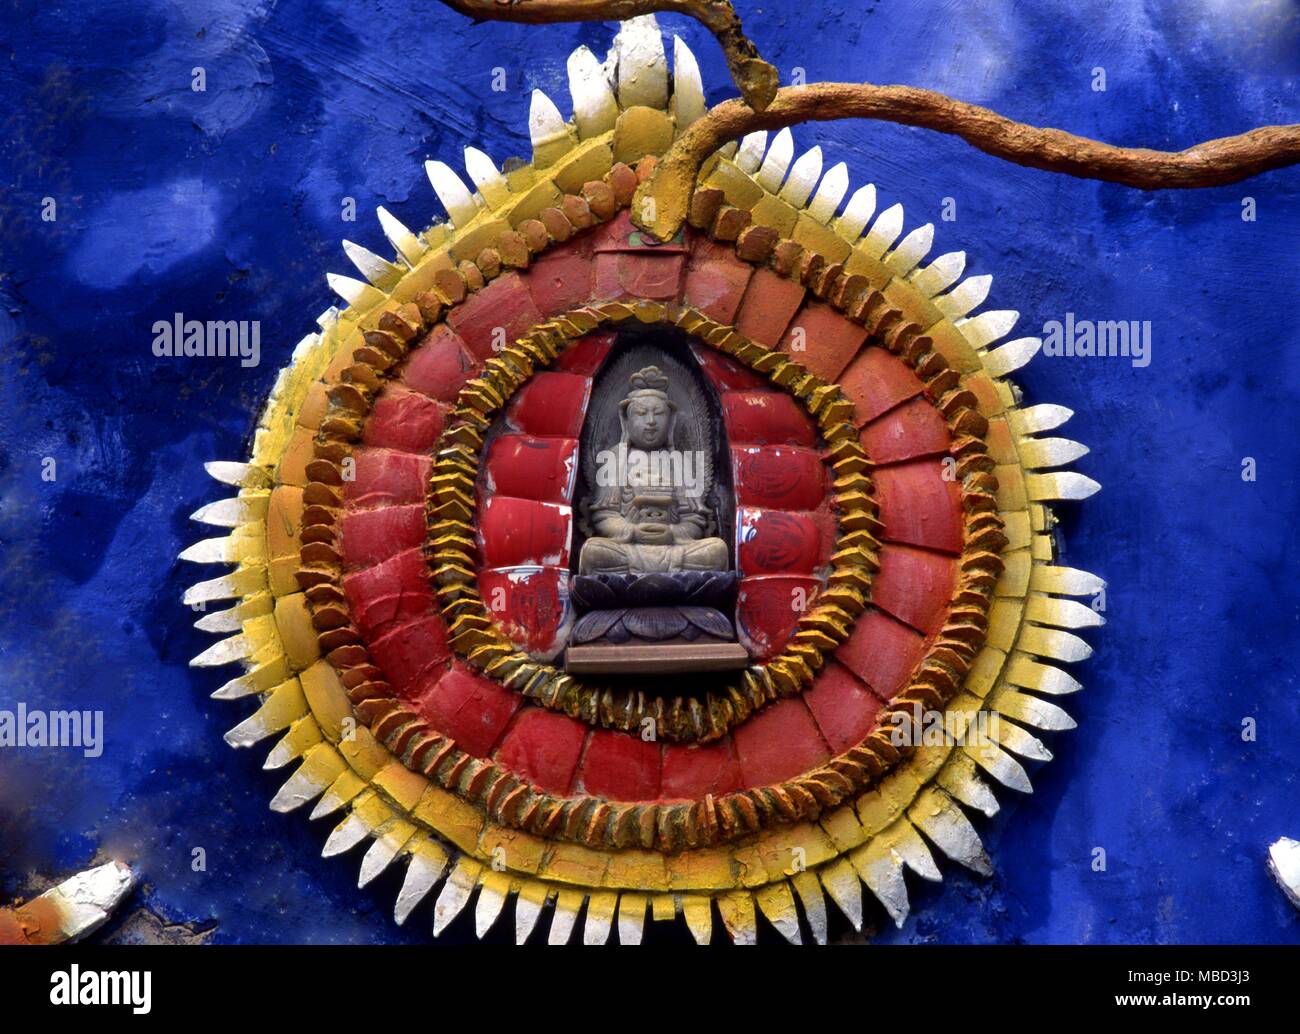 Symbole - die Perle der große Perle der Buddhistischen Symbolik ist eigentlich eine Darstellung der astrale Körper des Buddha. Keramik auf einer Wand in der Tiger Balm Gardens. Hongkong Stockfoto